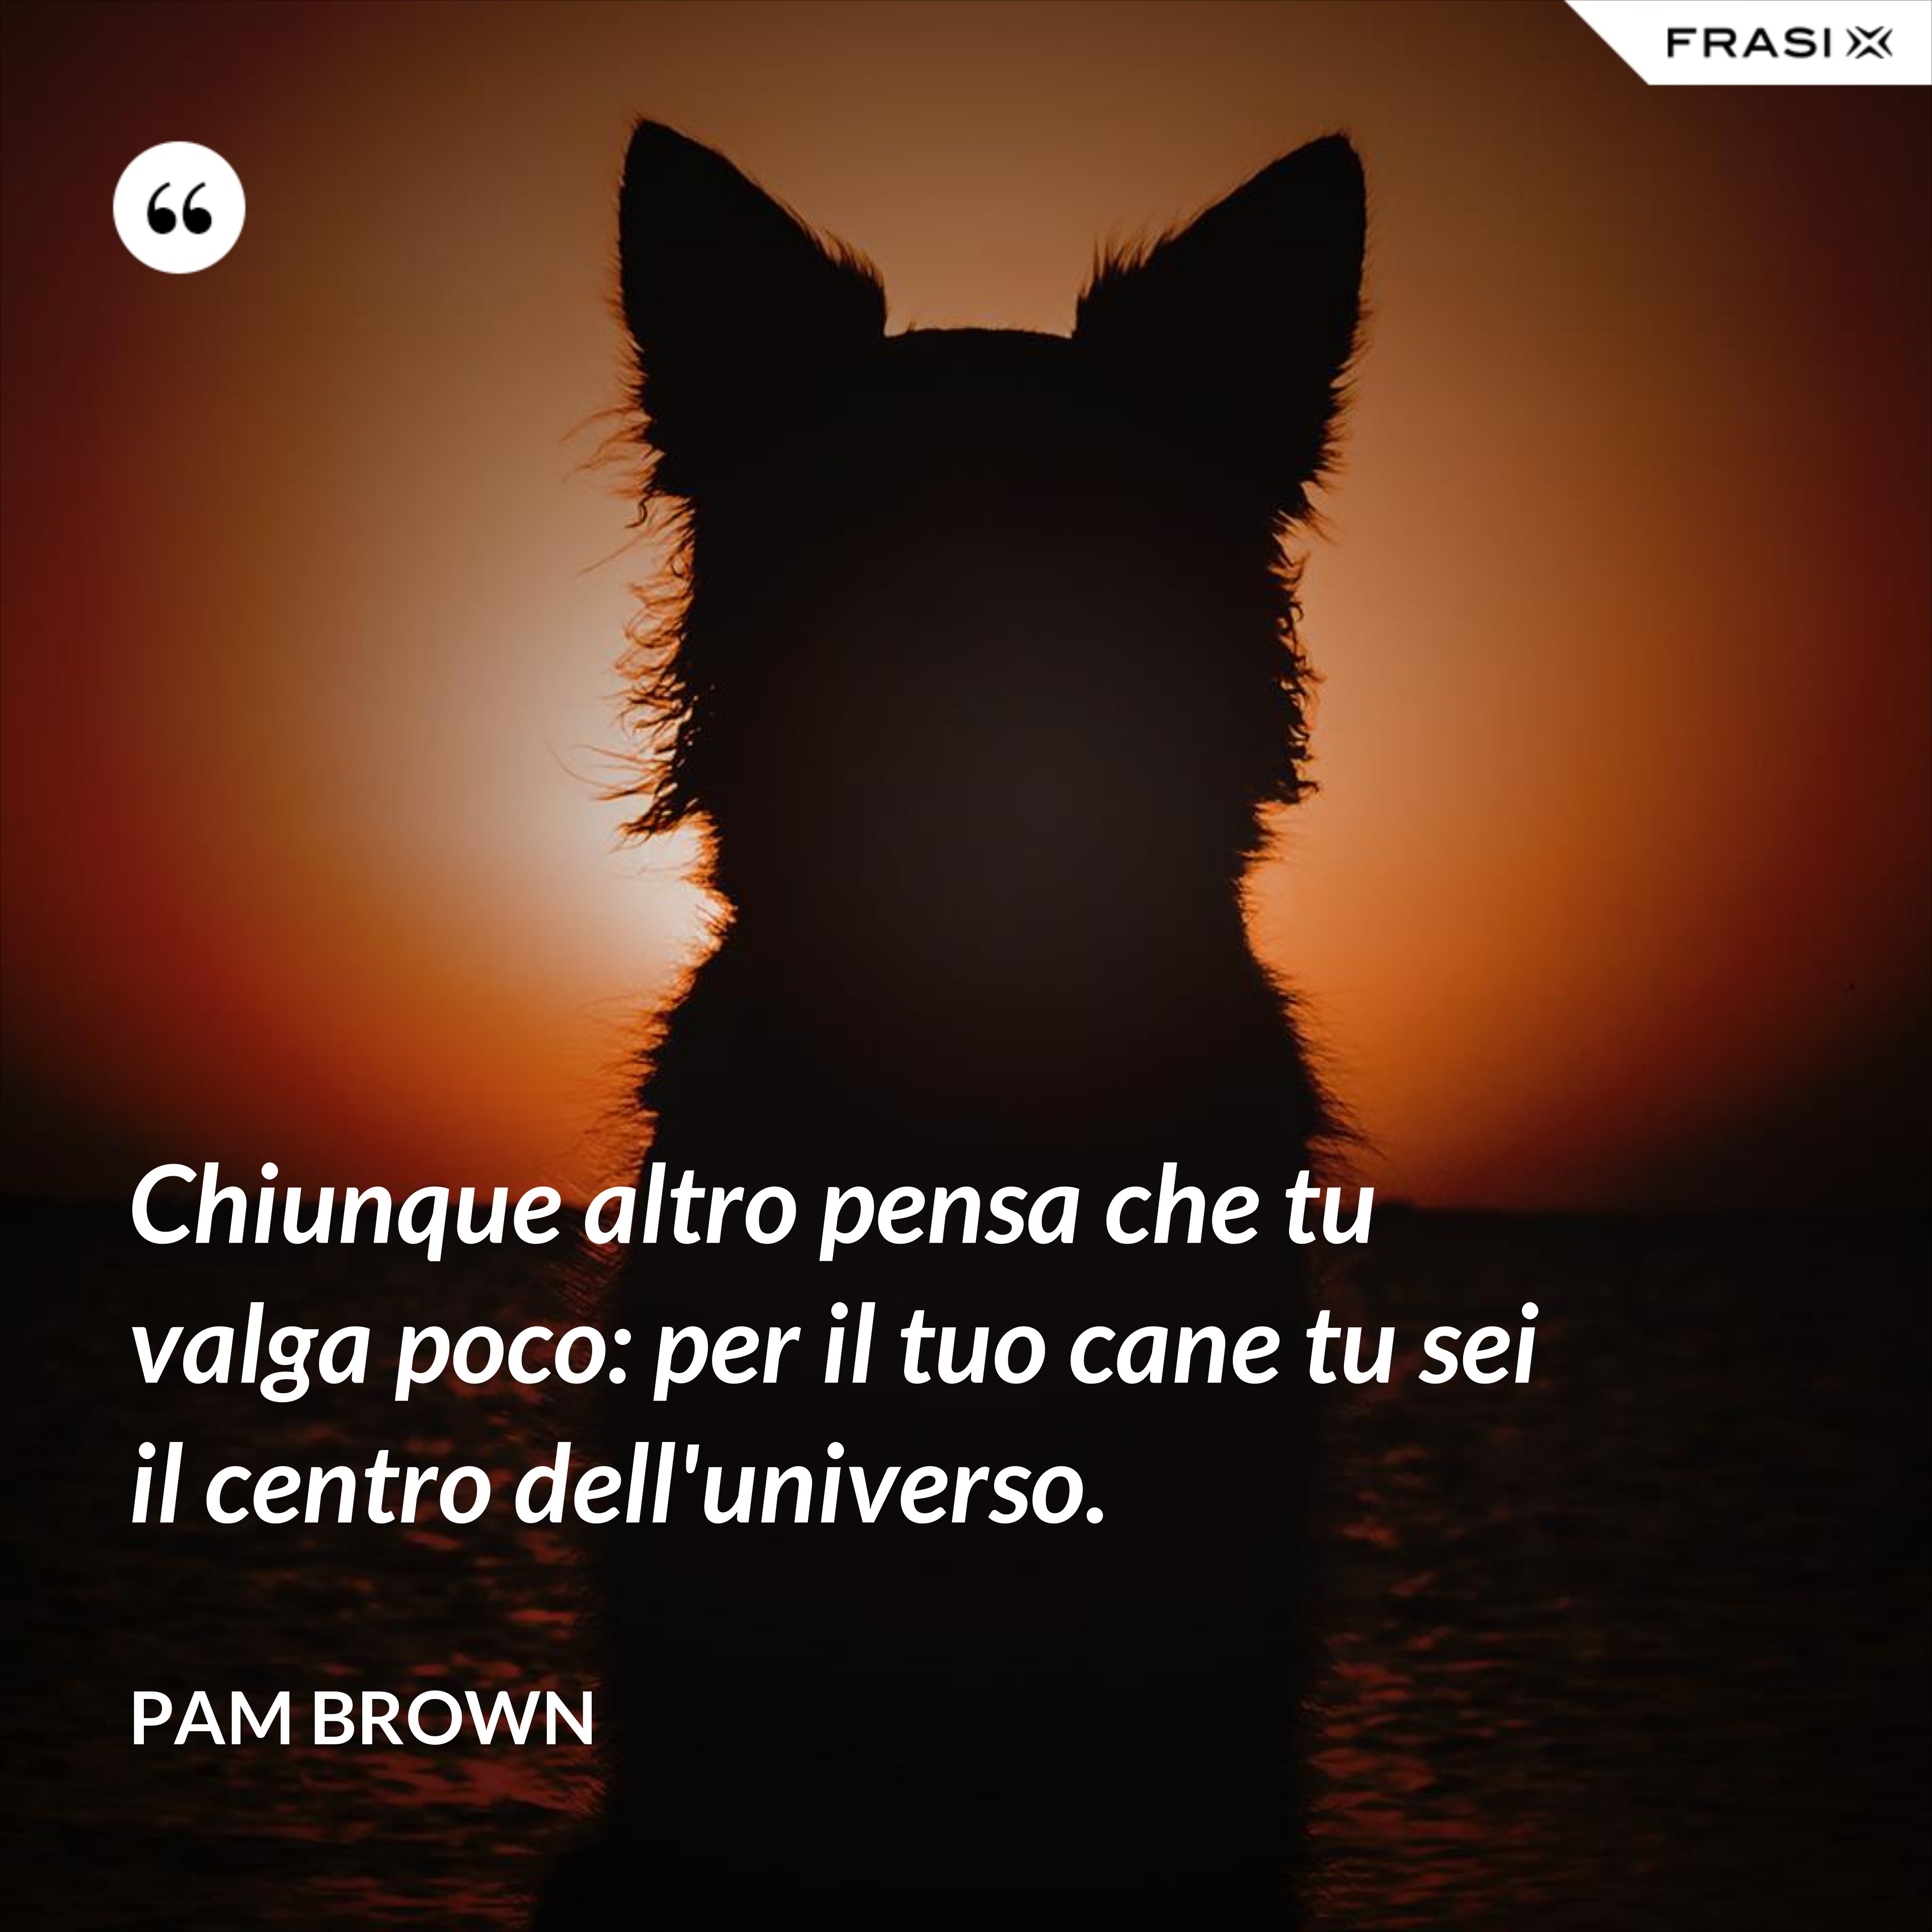 Chiunque altro pensa che tu valga poco: per il tuo cane tu sei il centro dell'universo. - Pam Brown